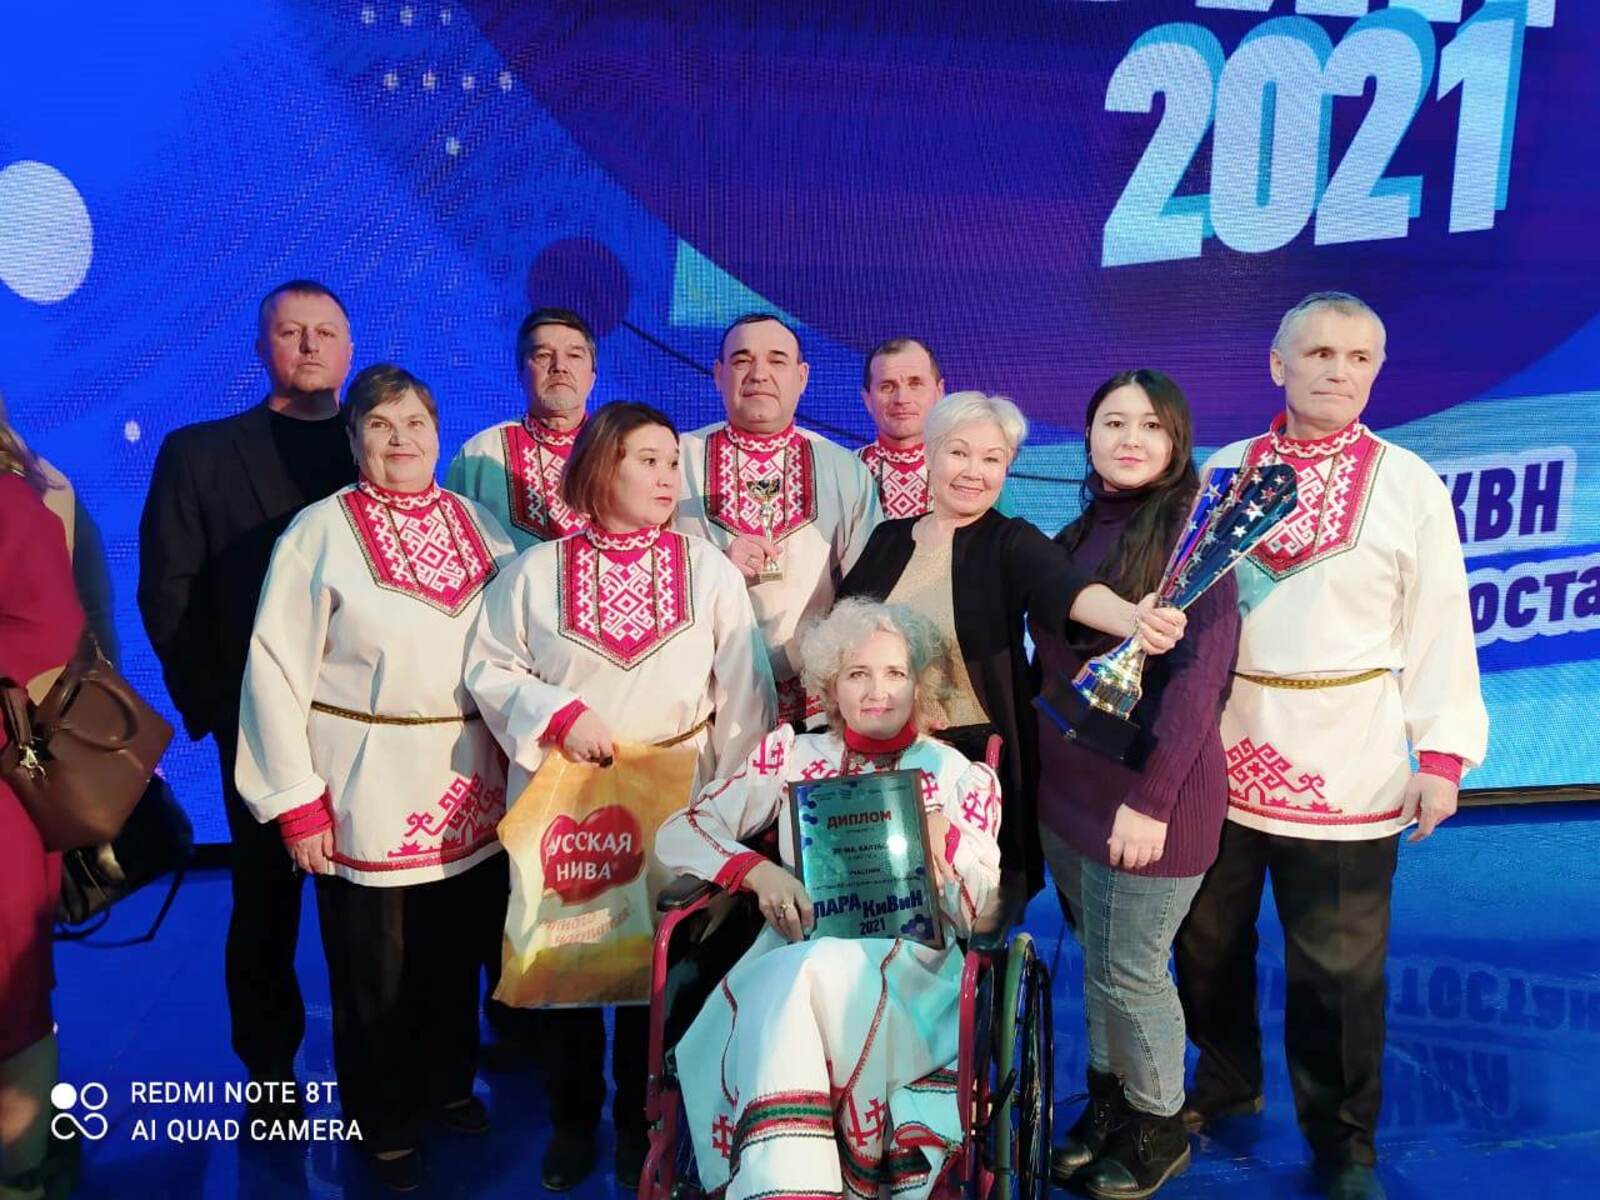 Команда Калтасинского района «Эх-ма, Калтаса» выиграла Кубок Фестиваля «ПараКИВИН-2021»